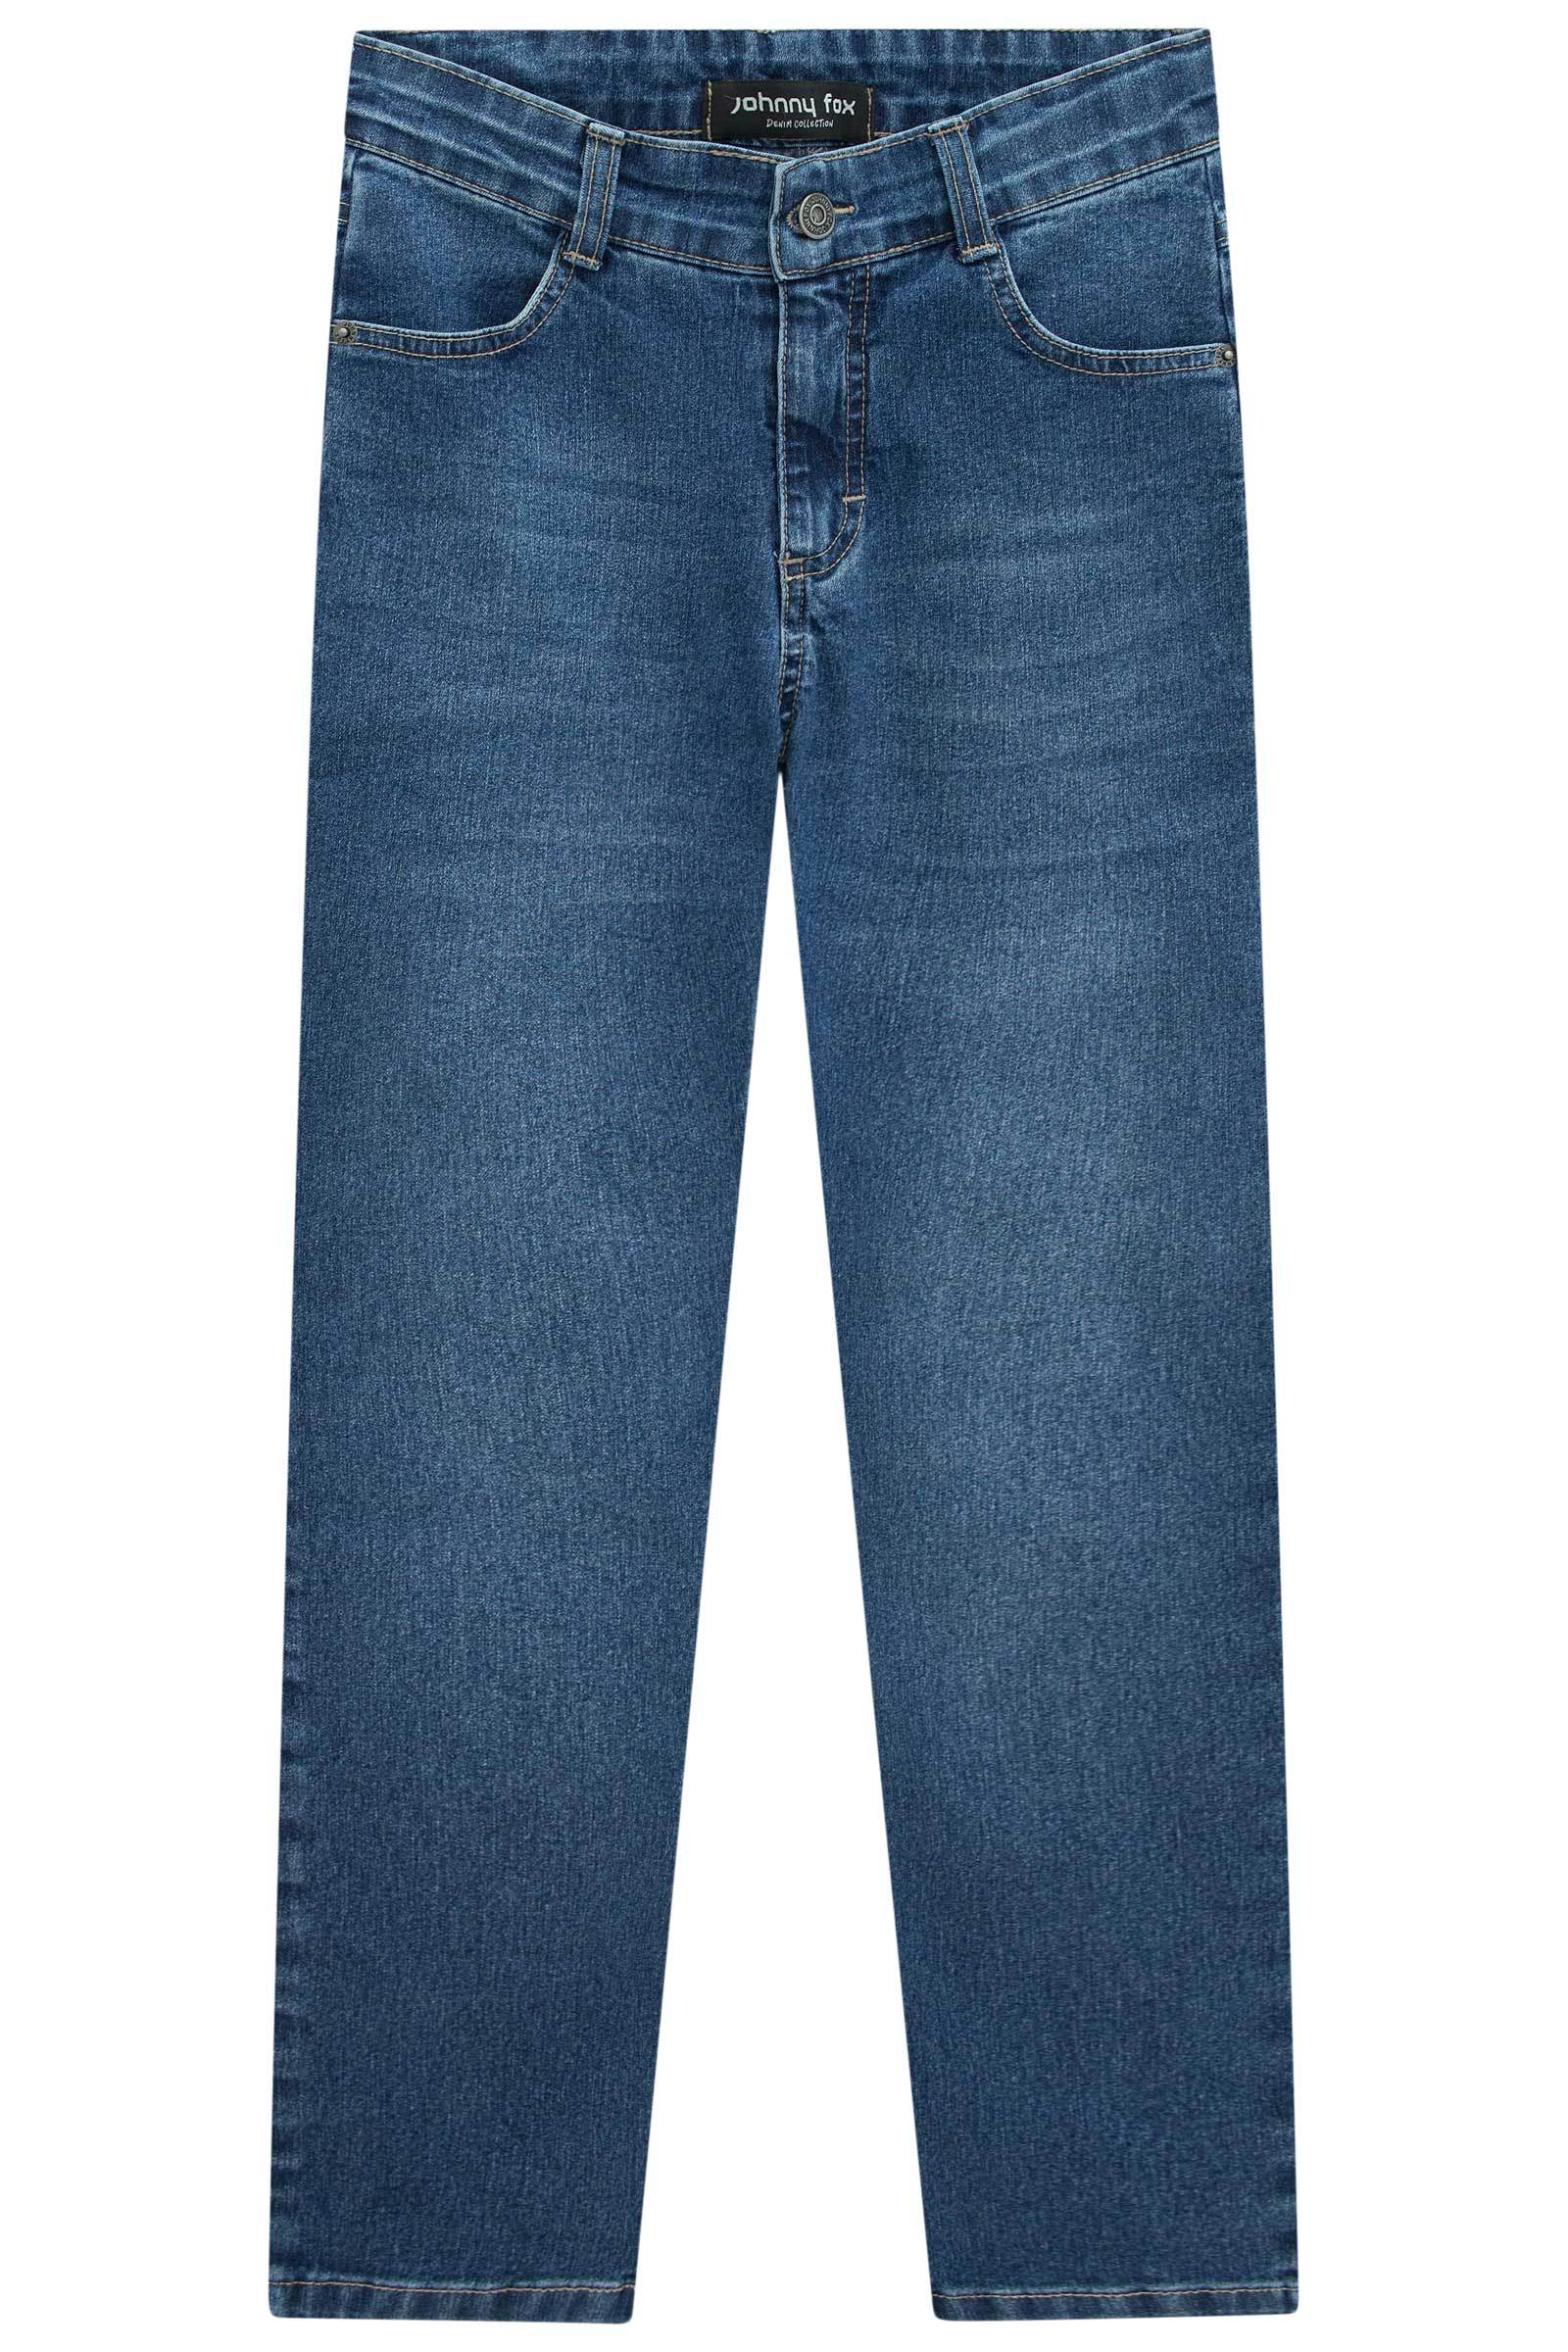 Calça Skinny em Jeans Bellini com Elastano 70821 Johnny Fox